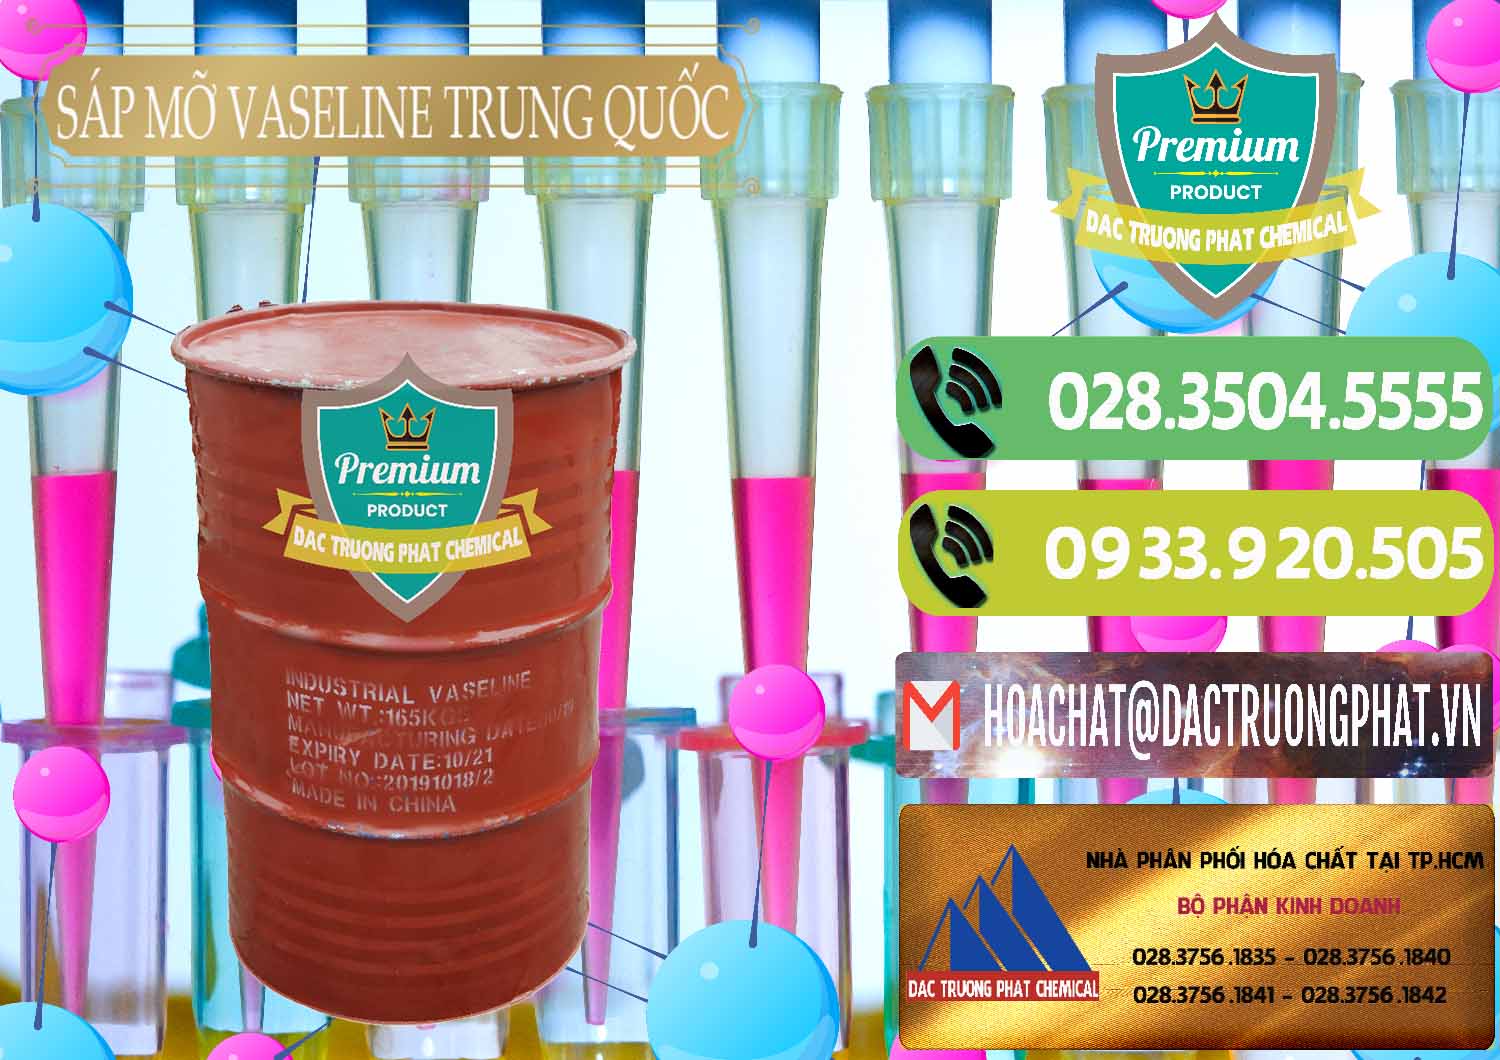 Nơi chuyên bán ( cung ứng ) Sáp Mỡ Vaseline Trung Quốc China - 0122 - Chuyên cung cấp - nhập khẩu hóa chất tại TP.HCM - hoachatmientay.vn